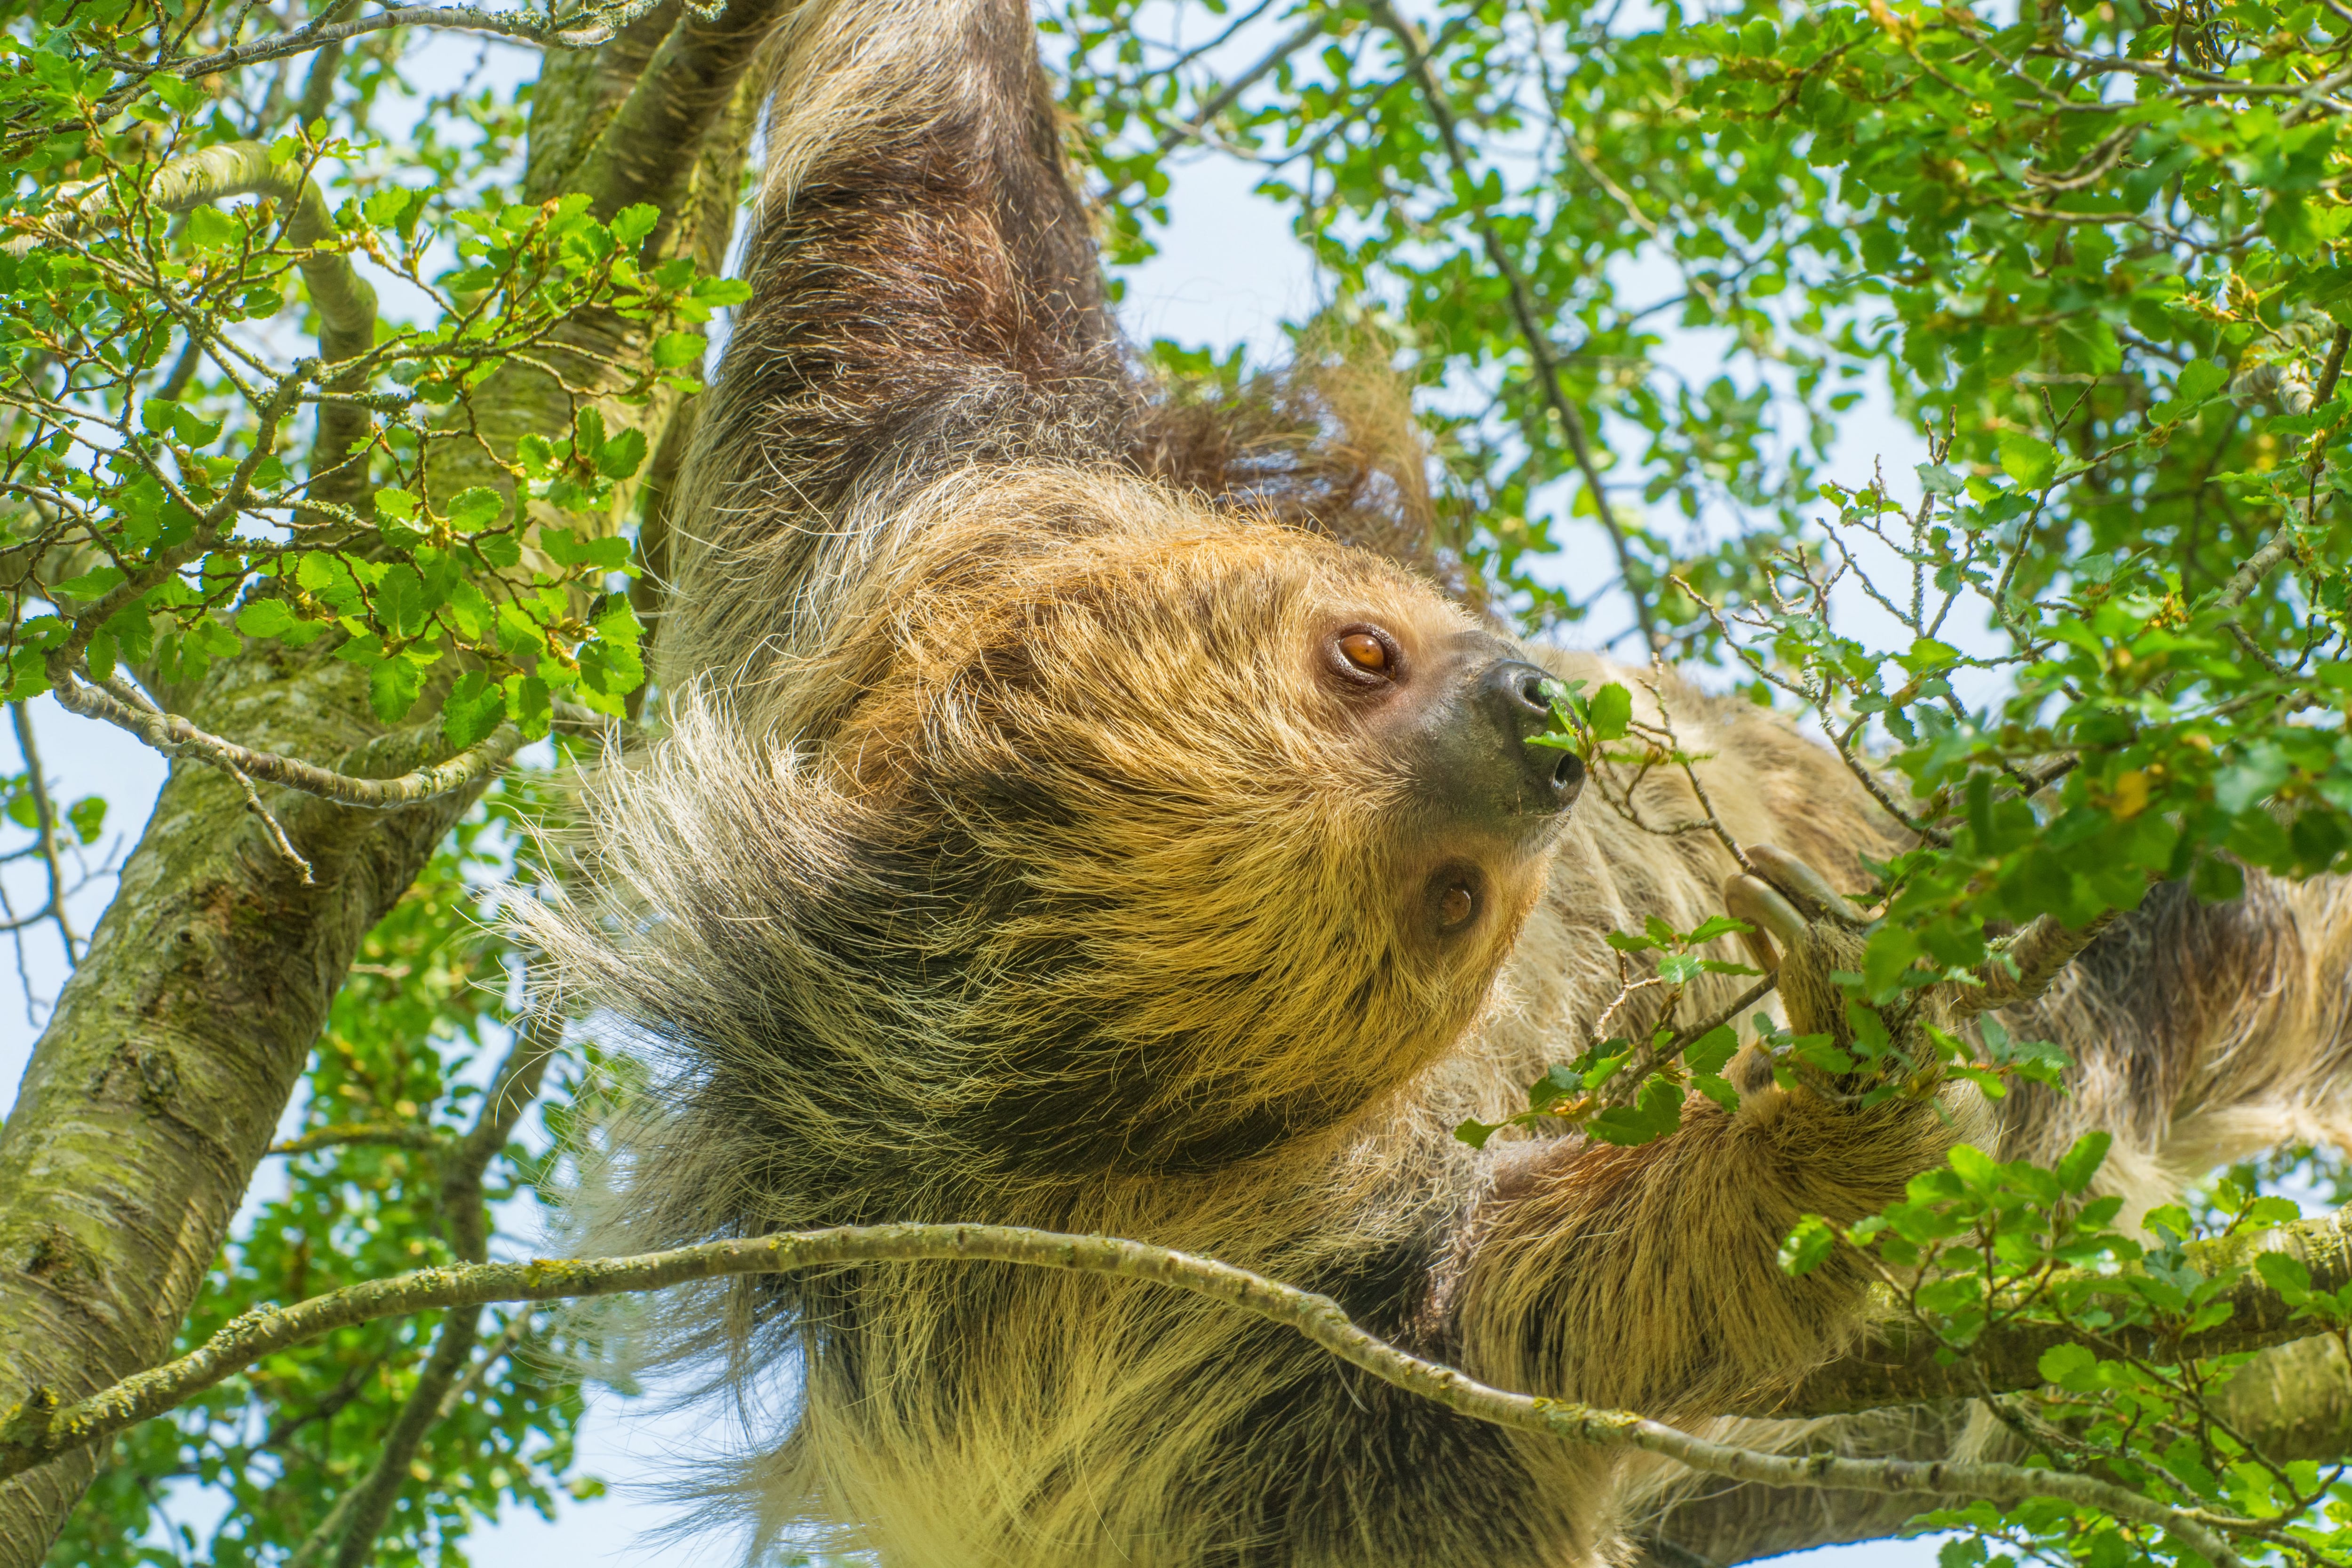 nasa sloth